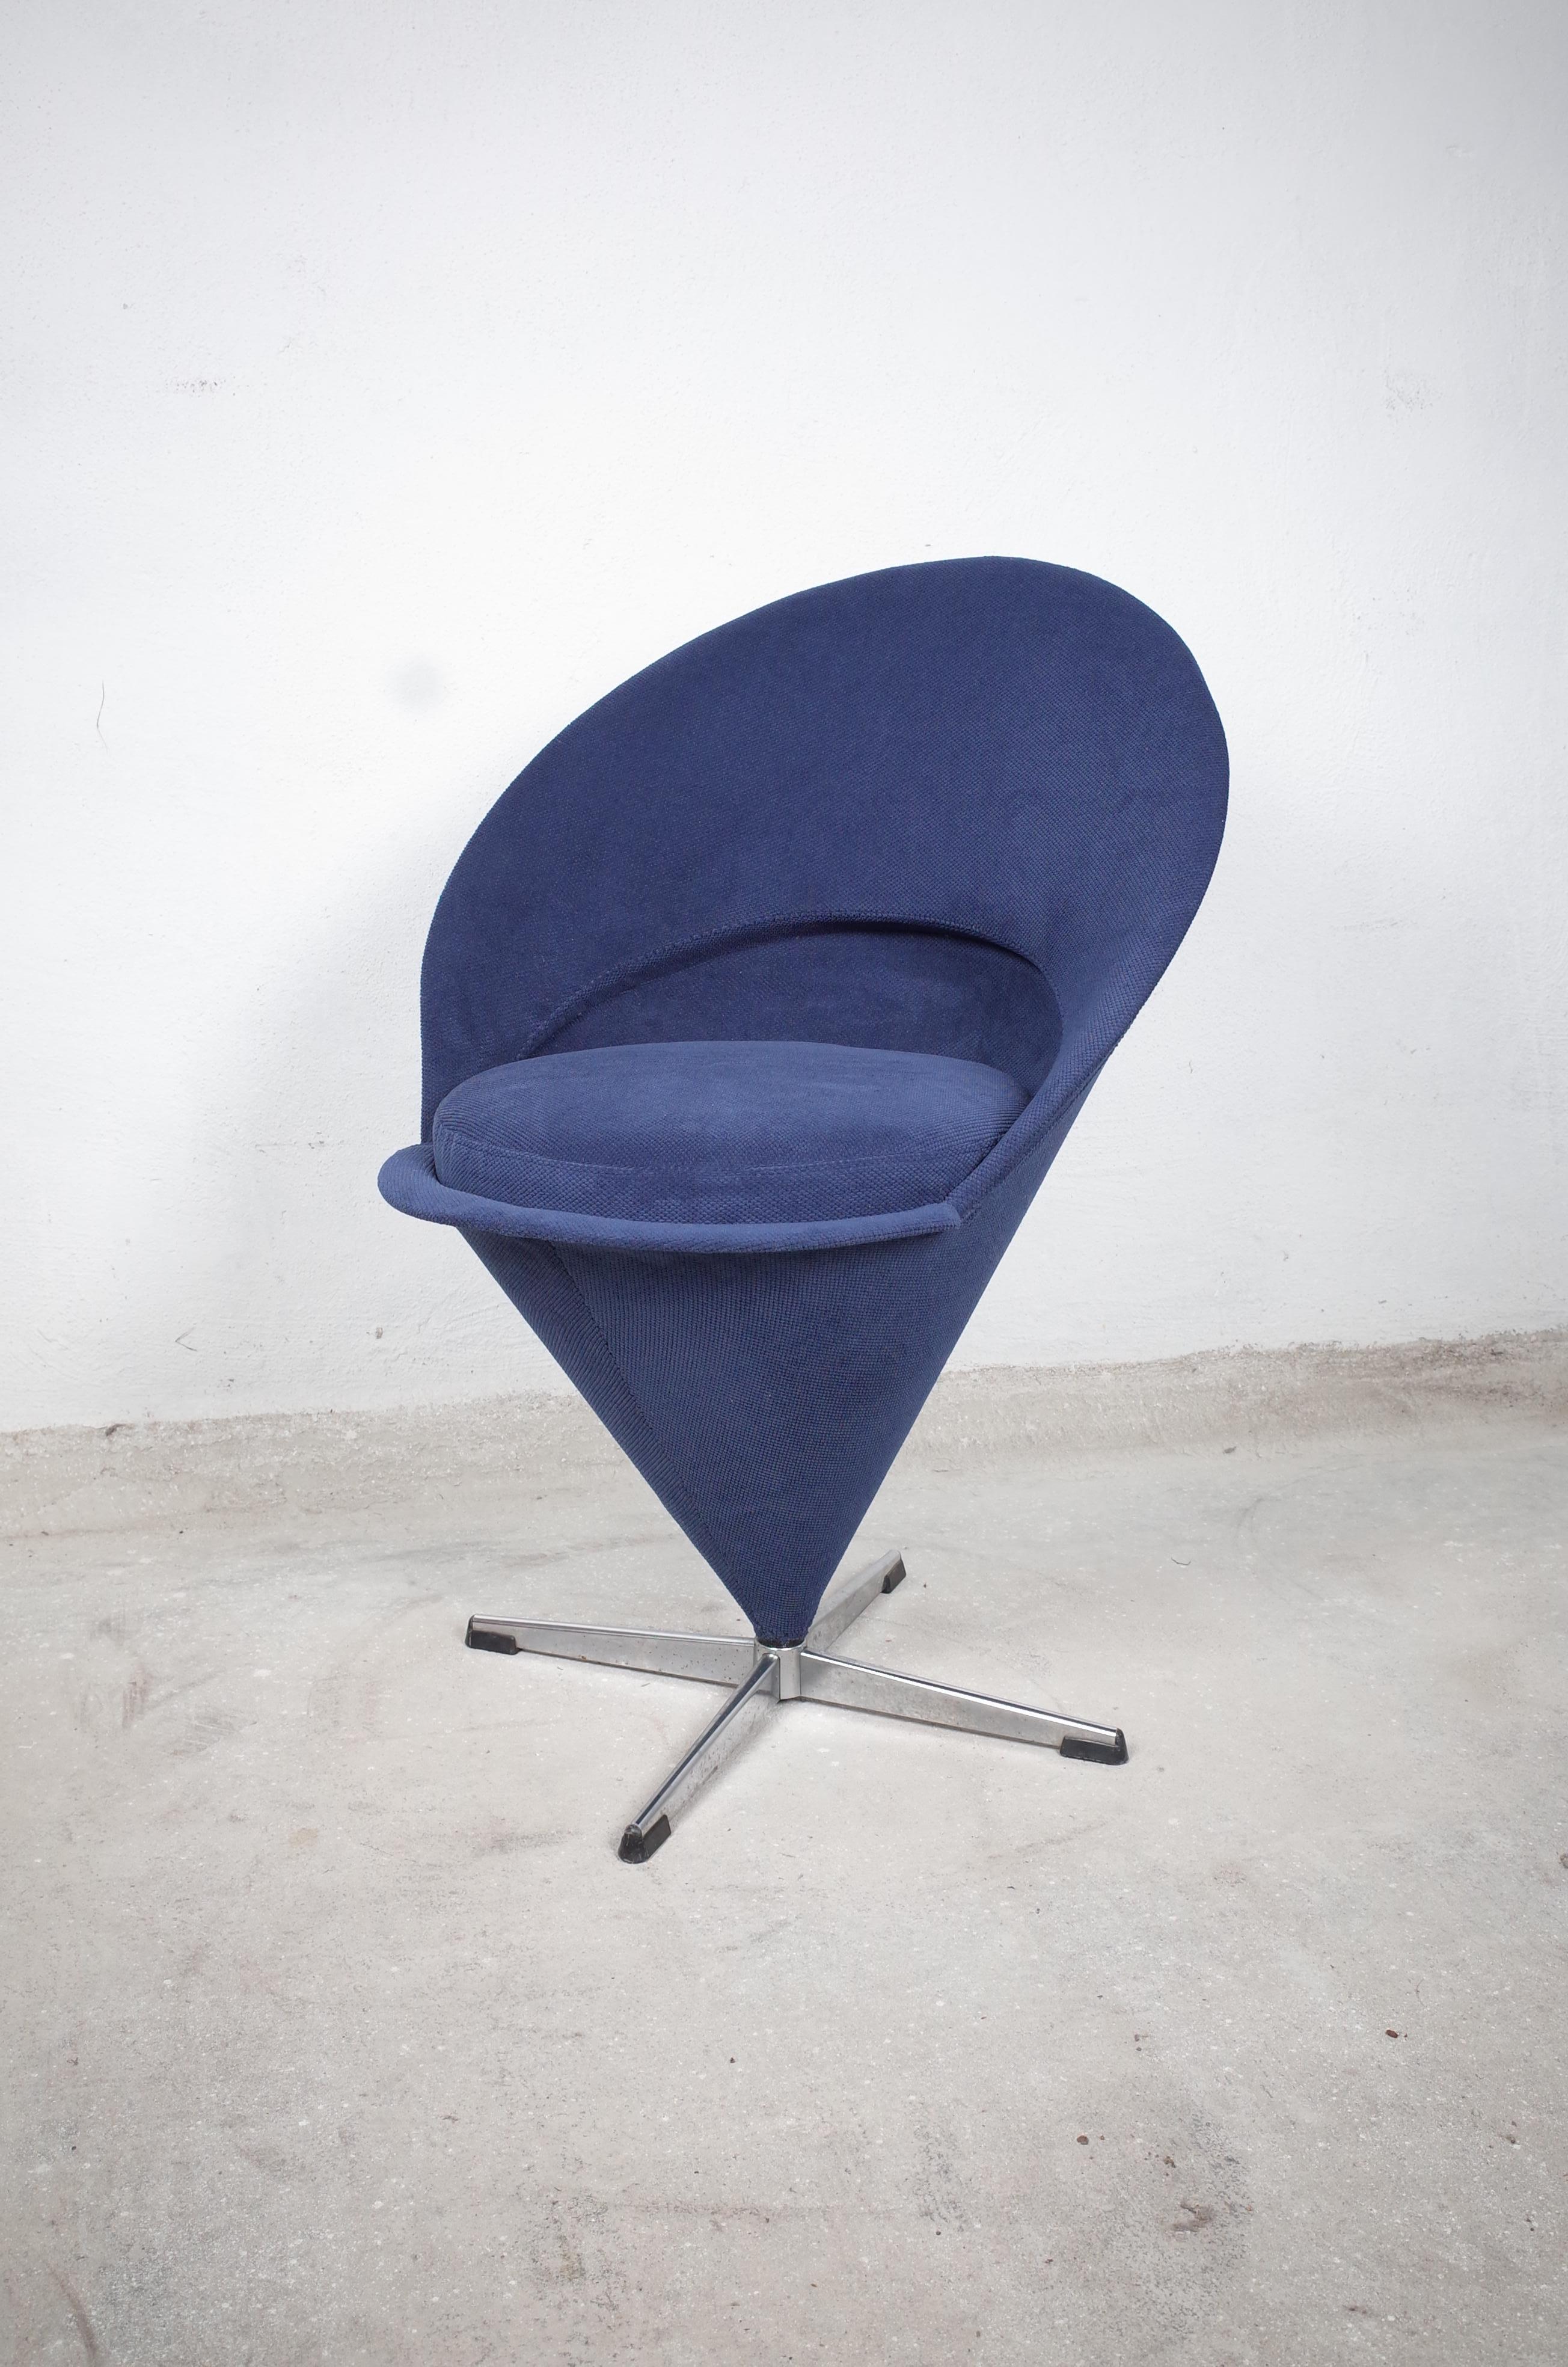 Wunderschöner Designklassiker von Verner Panton. Der Sessel ist drehbar und wurde mit einem hochwertigen blauen Polsterstoff neu bezogen. Die Polsterung wurde ebenfalls erneuert. Sogar der kleine Stauraum im Sesselinneren ist verkleidet, was ihn